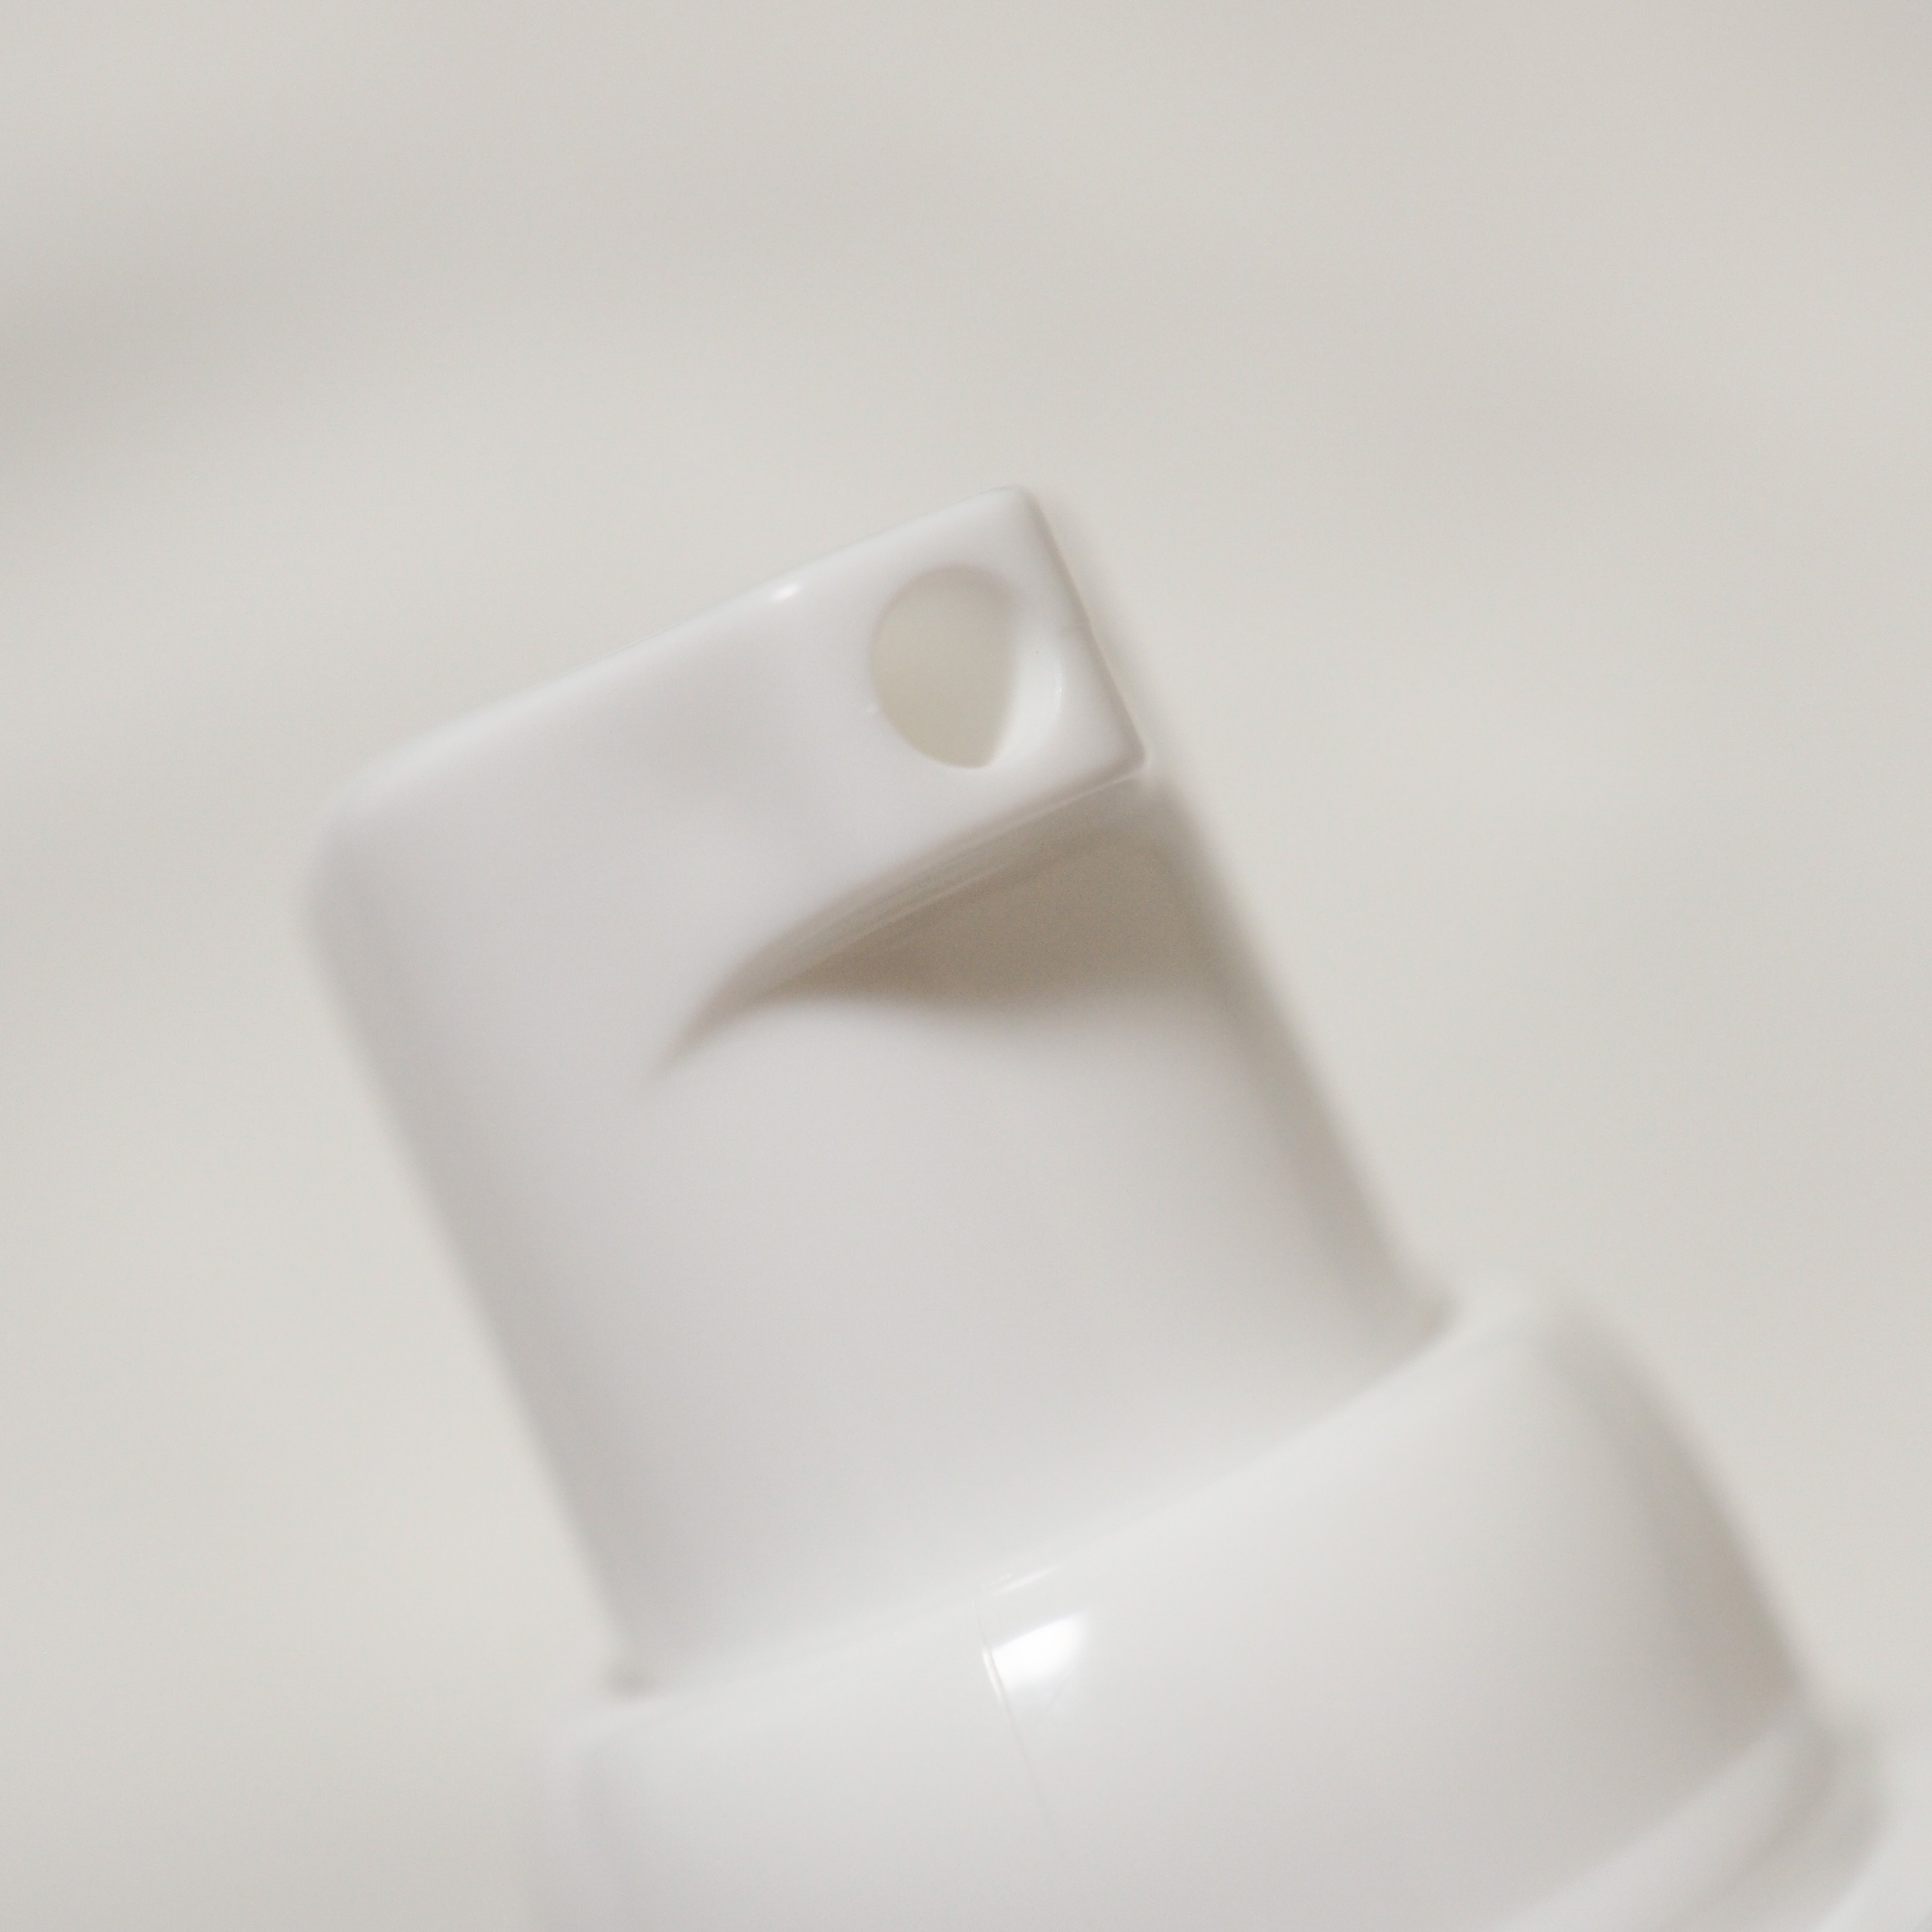 イニクスセンシティブモイストバリアミルクを使ったaquaさんのクチコミ画像3